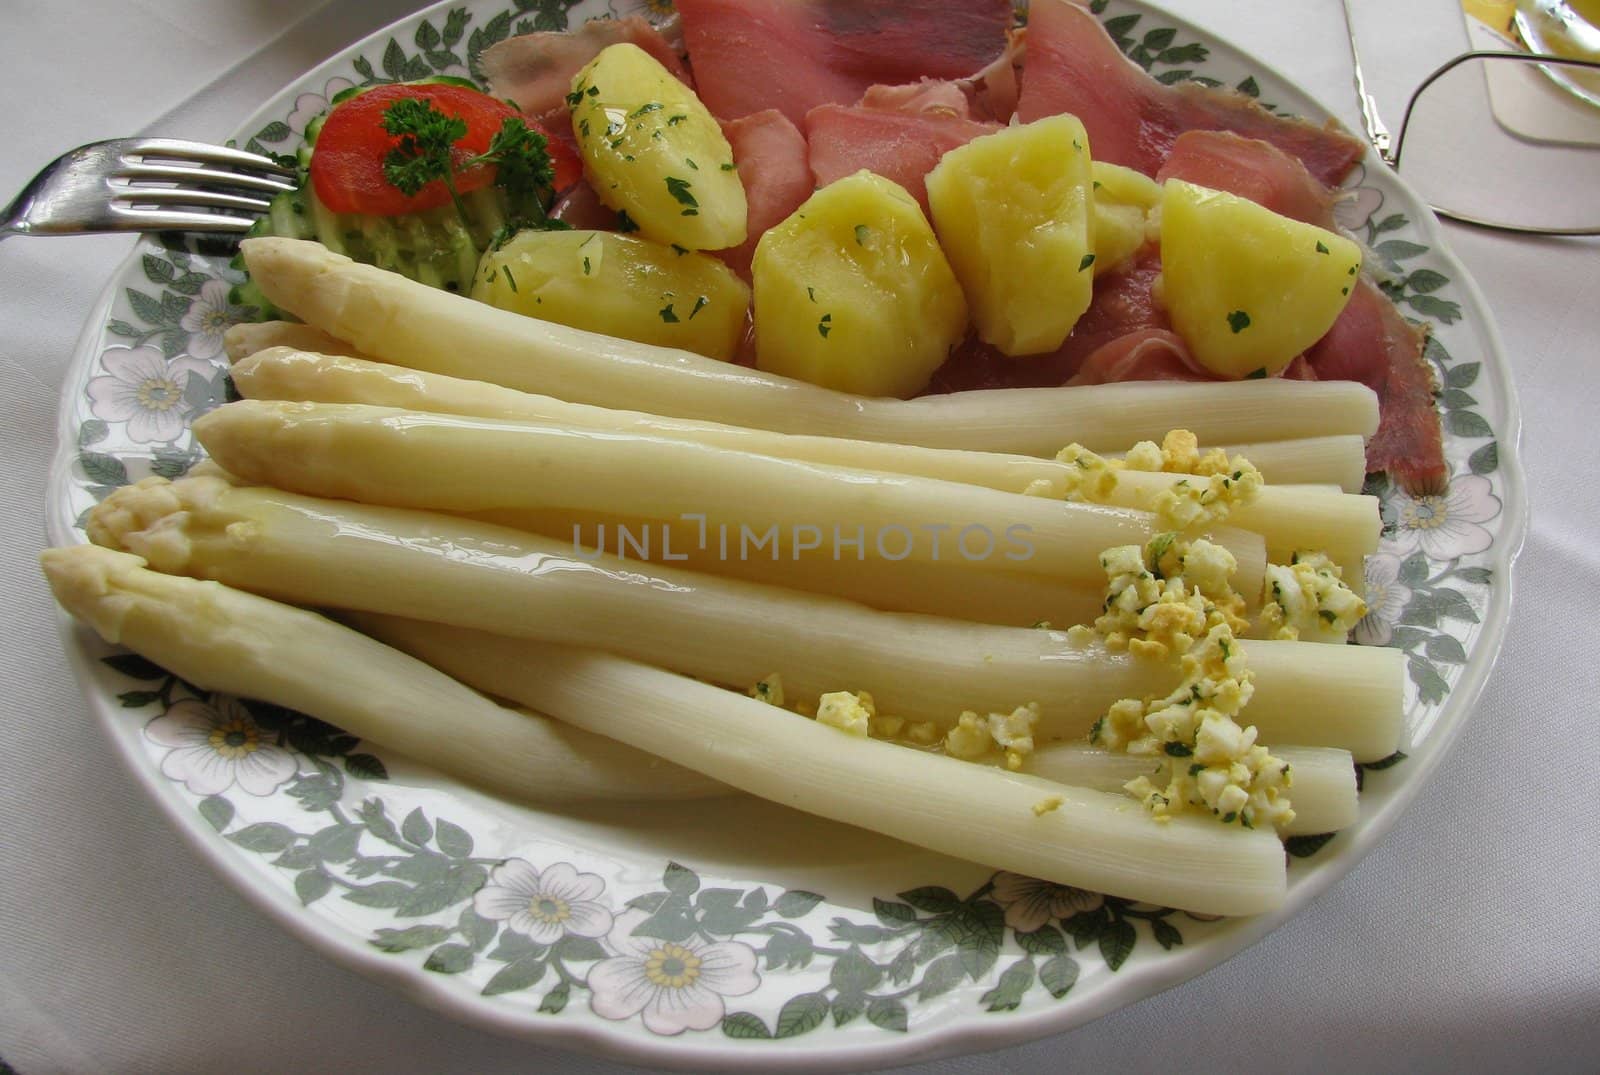 Food with asparagus